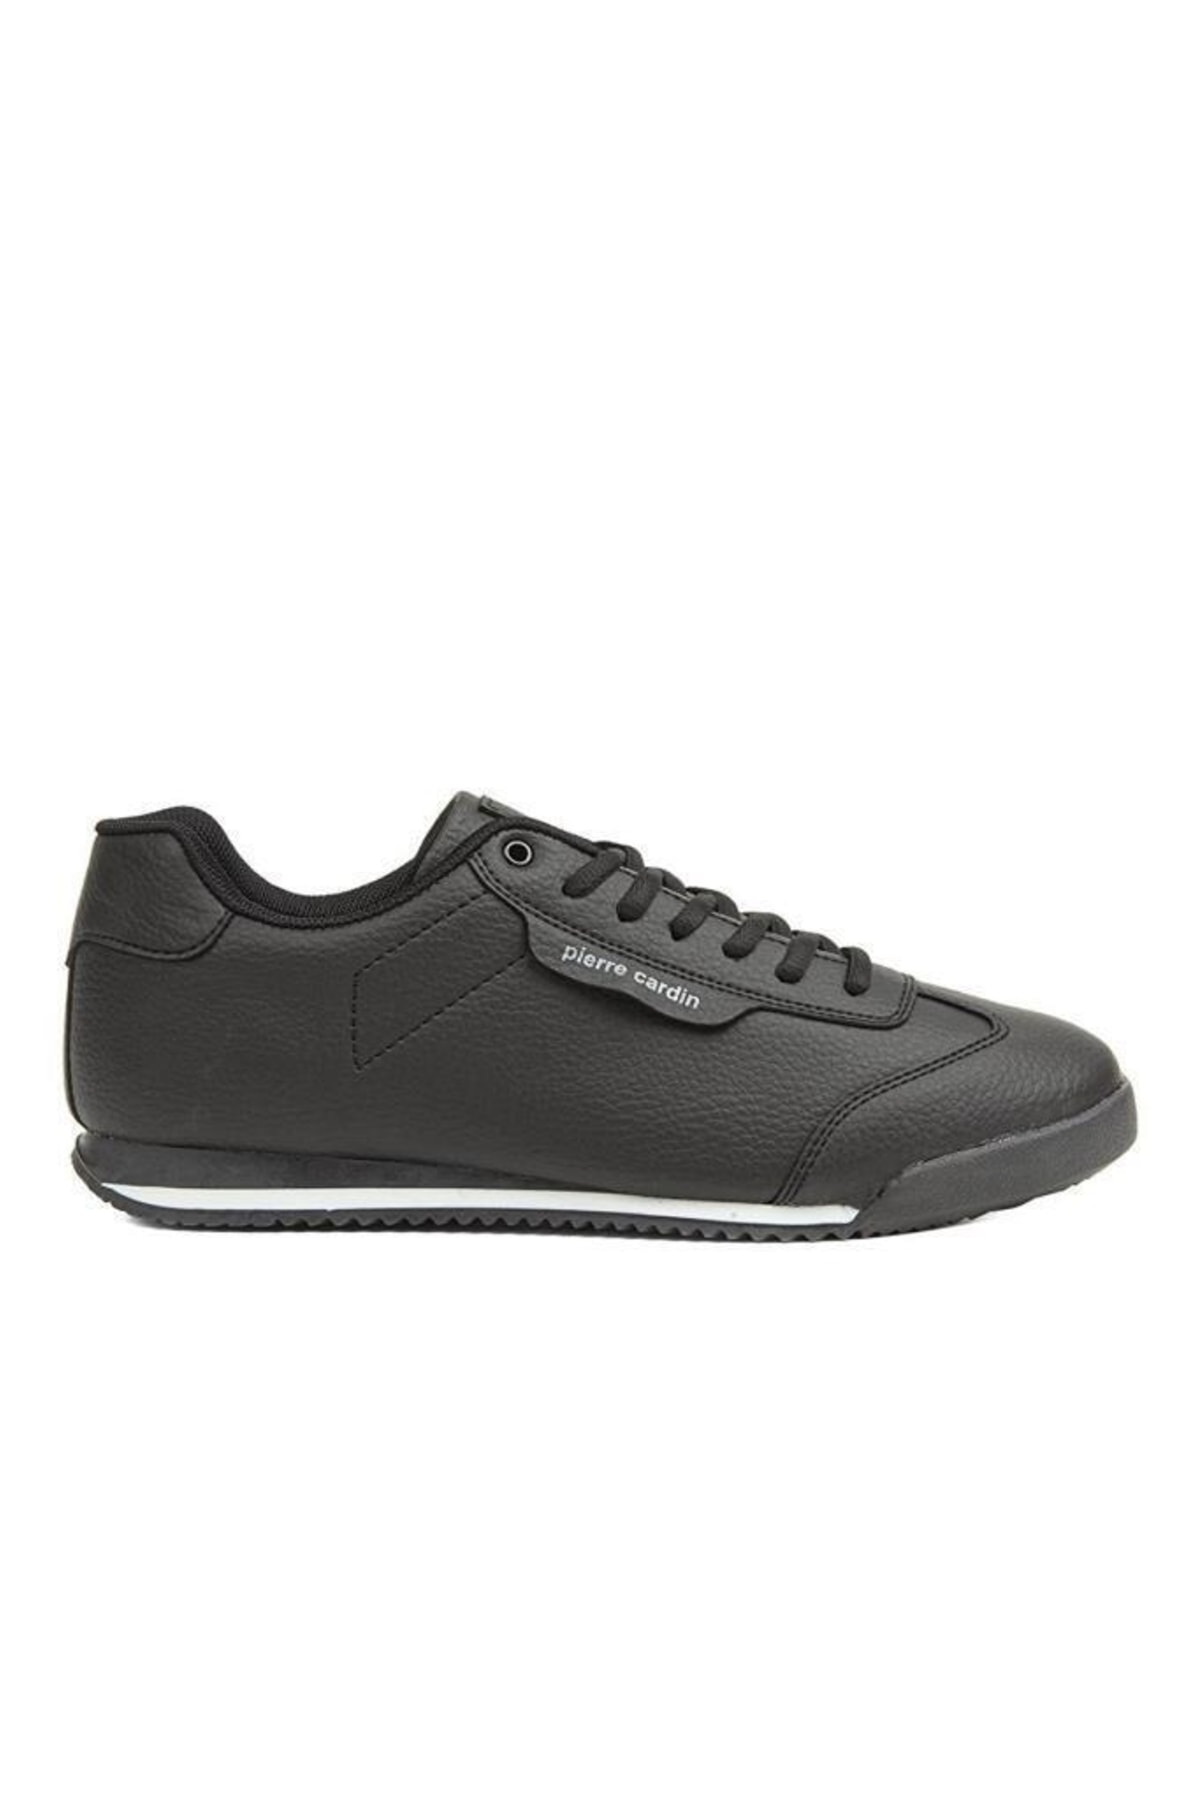 Pierre Cardin Pc-31249 Erkek Günlük Sneaker Spor Ayakkabı